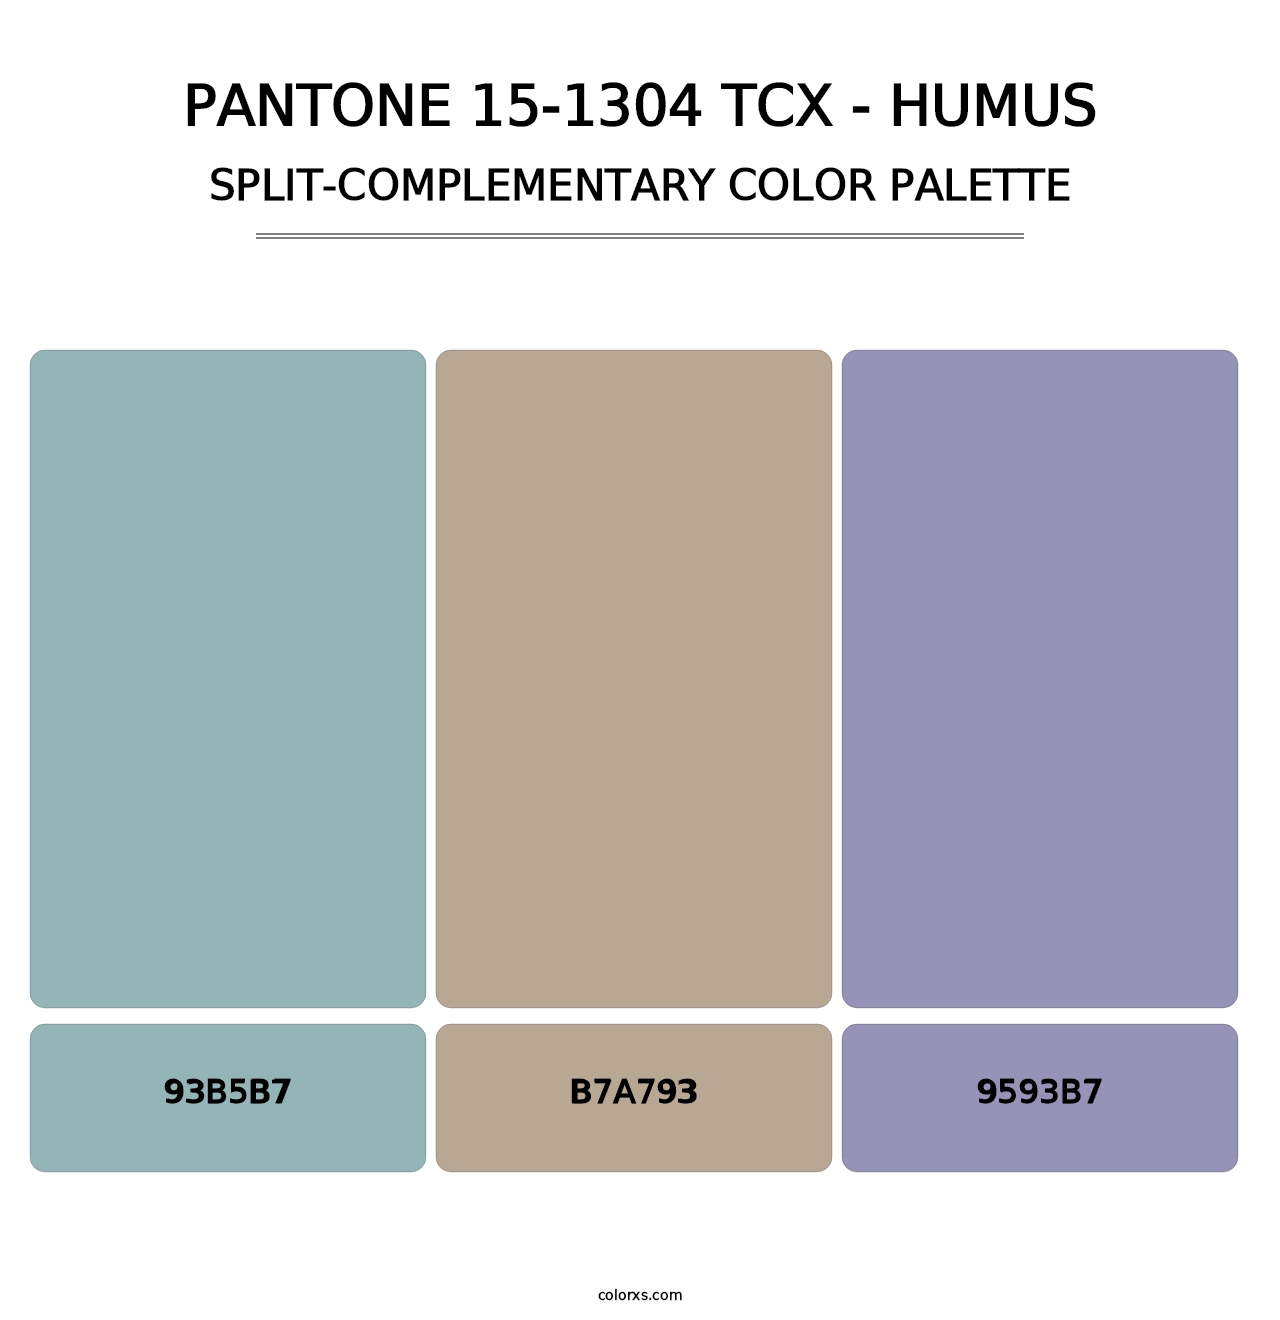 PANTONE 15-1304 TCX - Humus - Split-Complementary Color Palette